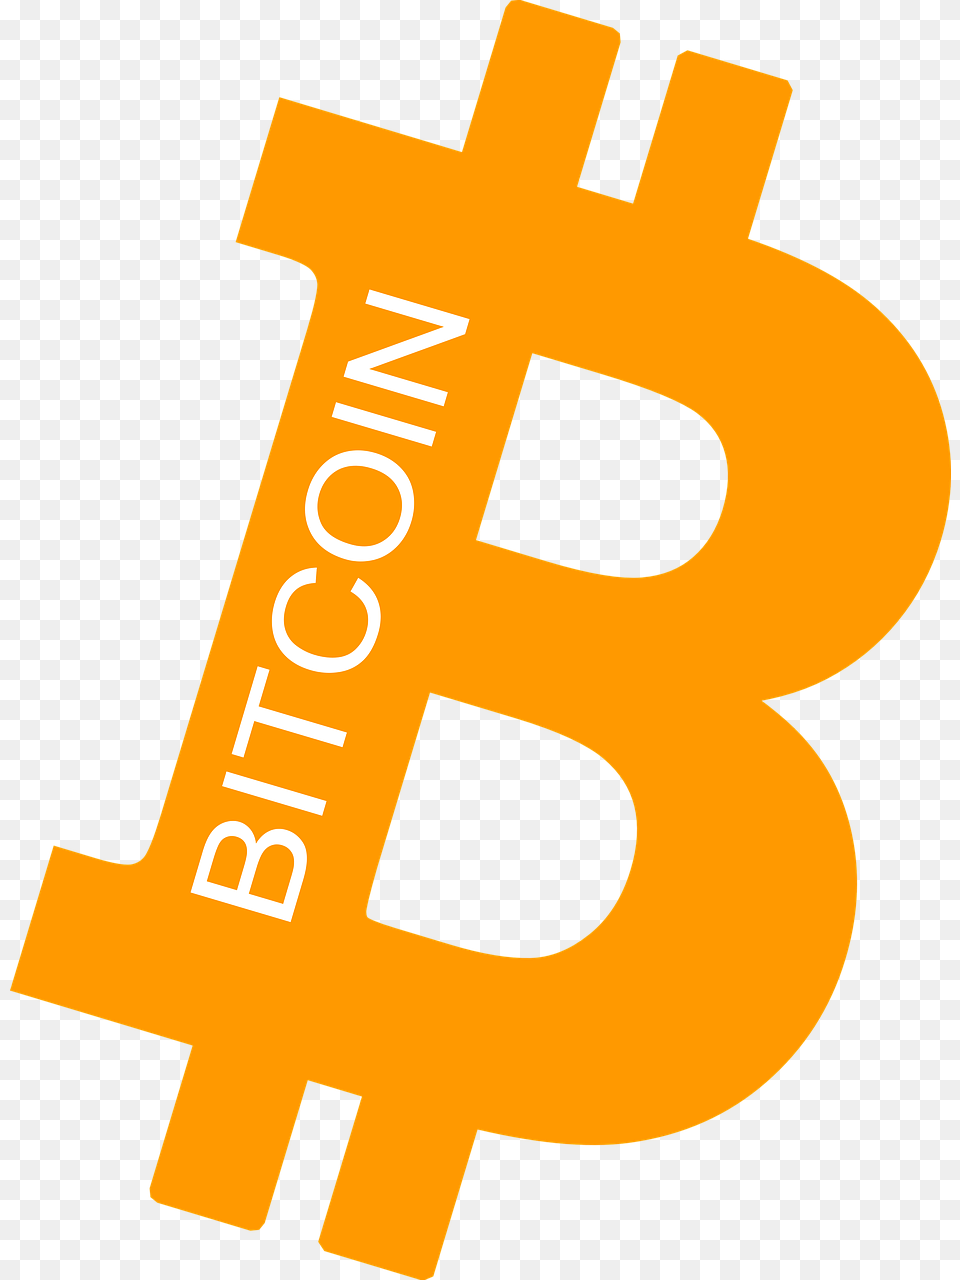 Simbolo De Bitcoin, Logo, Text Free Transparent Png